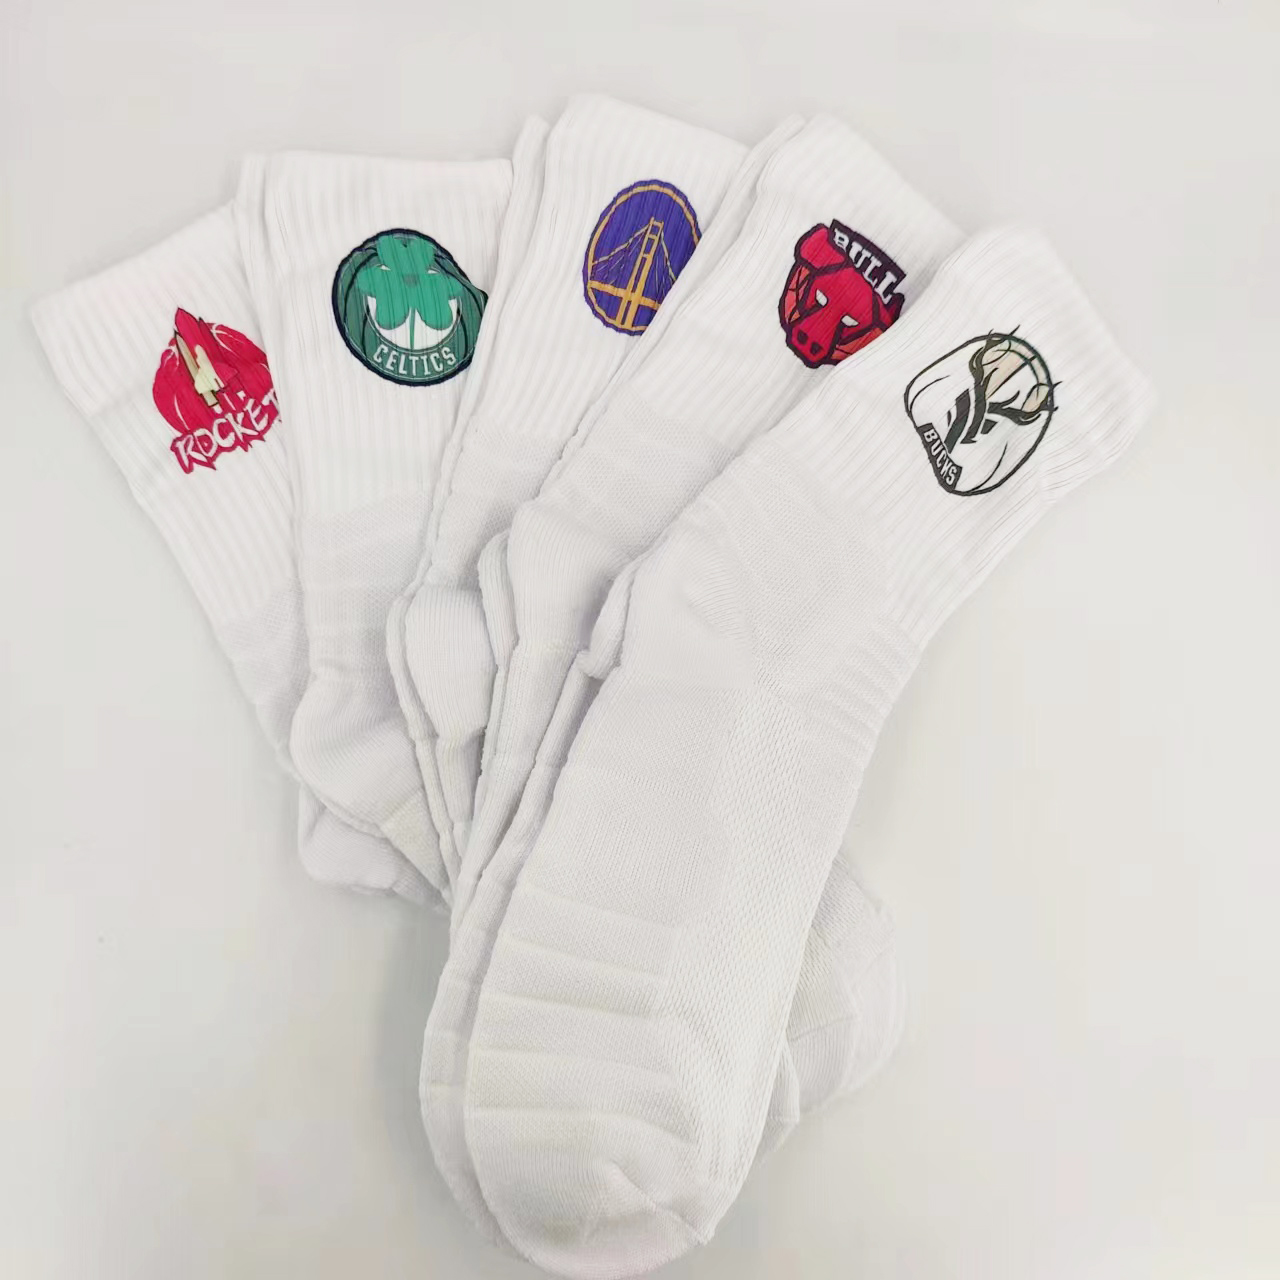 白色球袜湖人勇士掘金火箭公牛球队标志篮球运动袜高筒毛巾底加厚